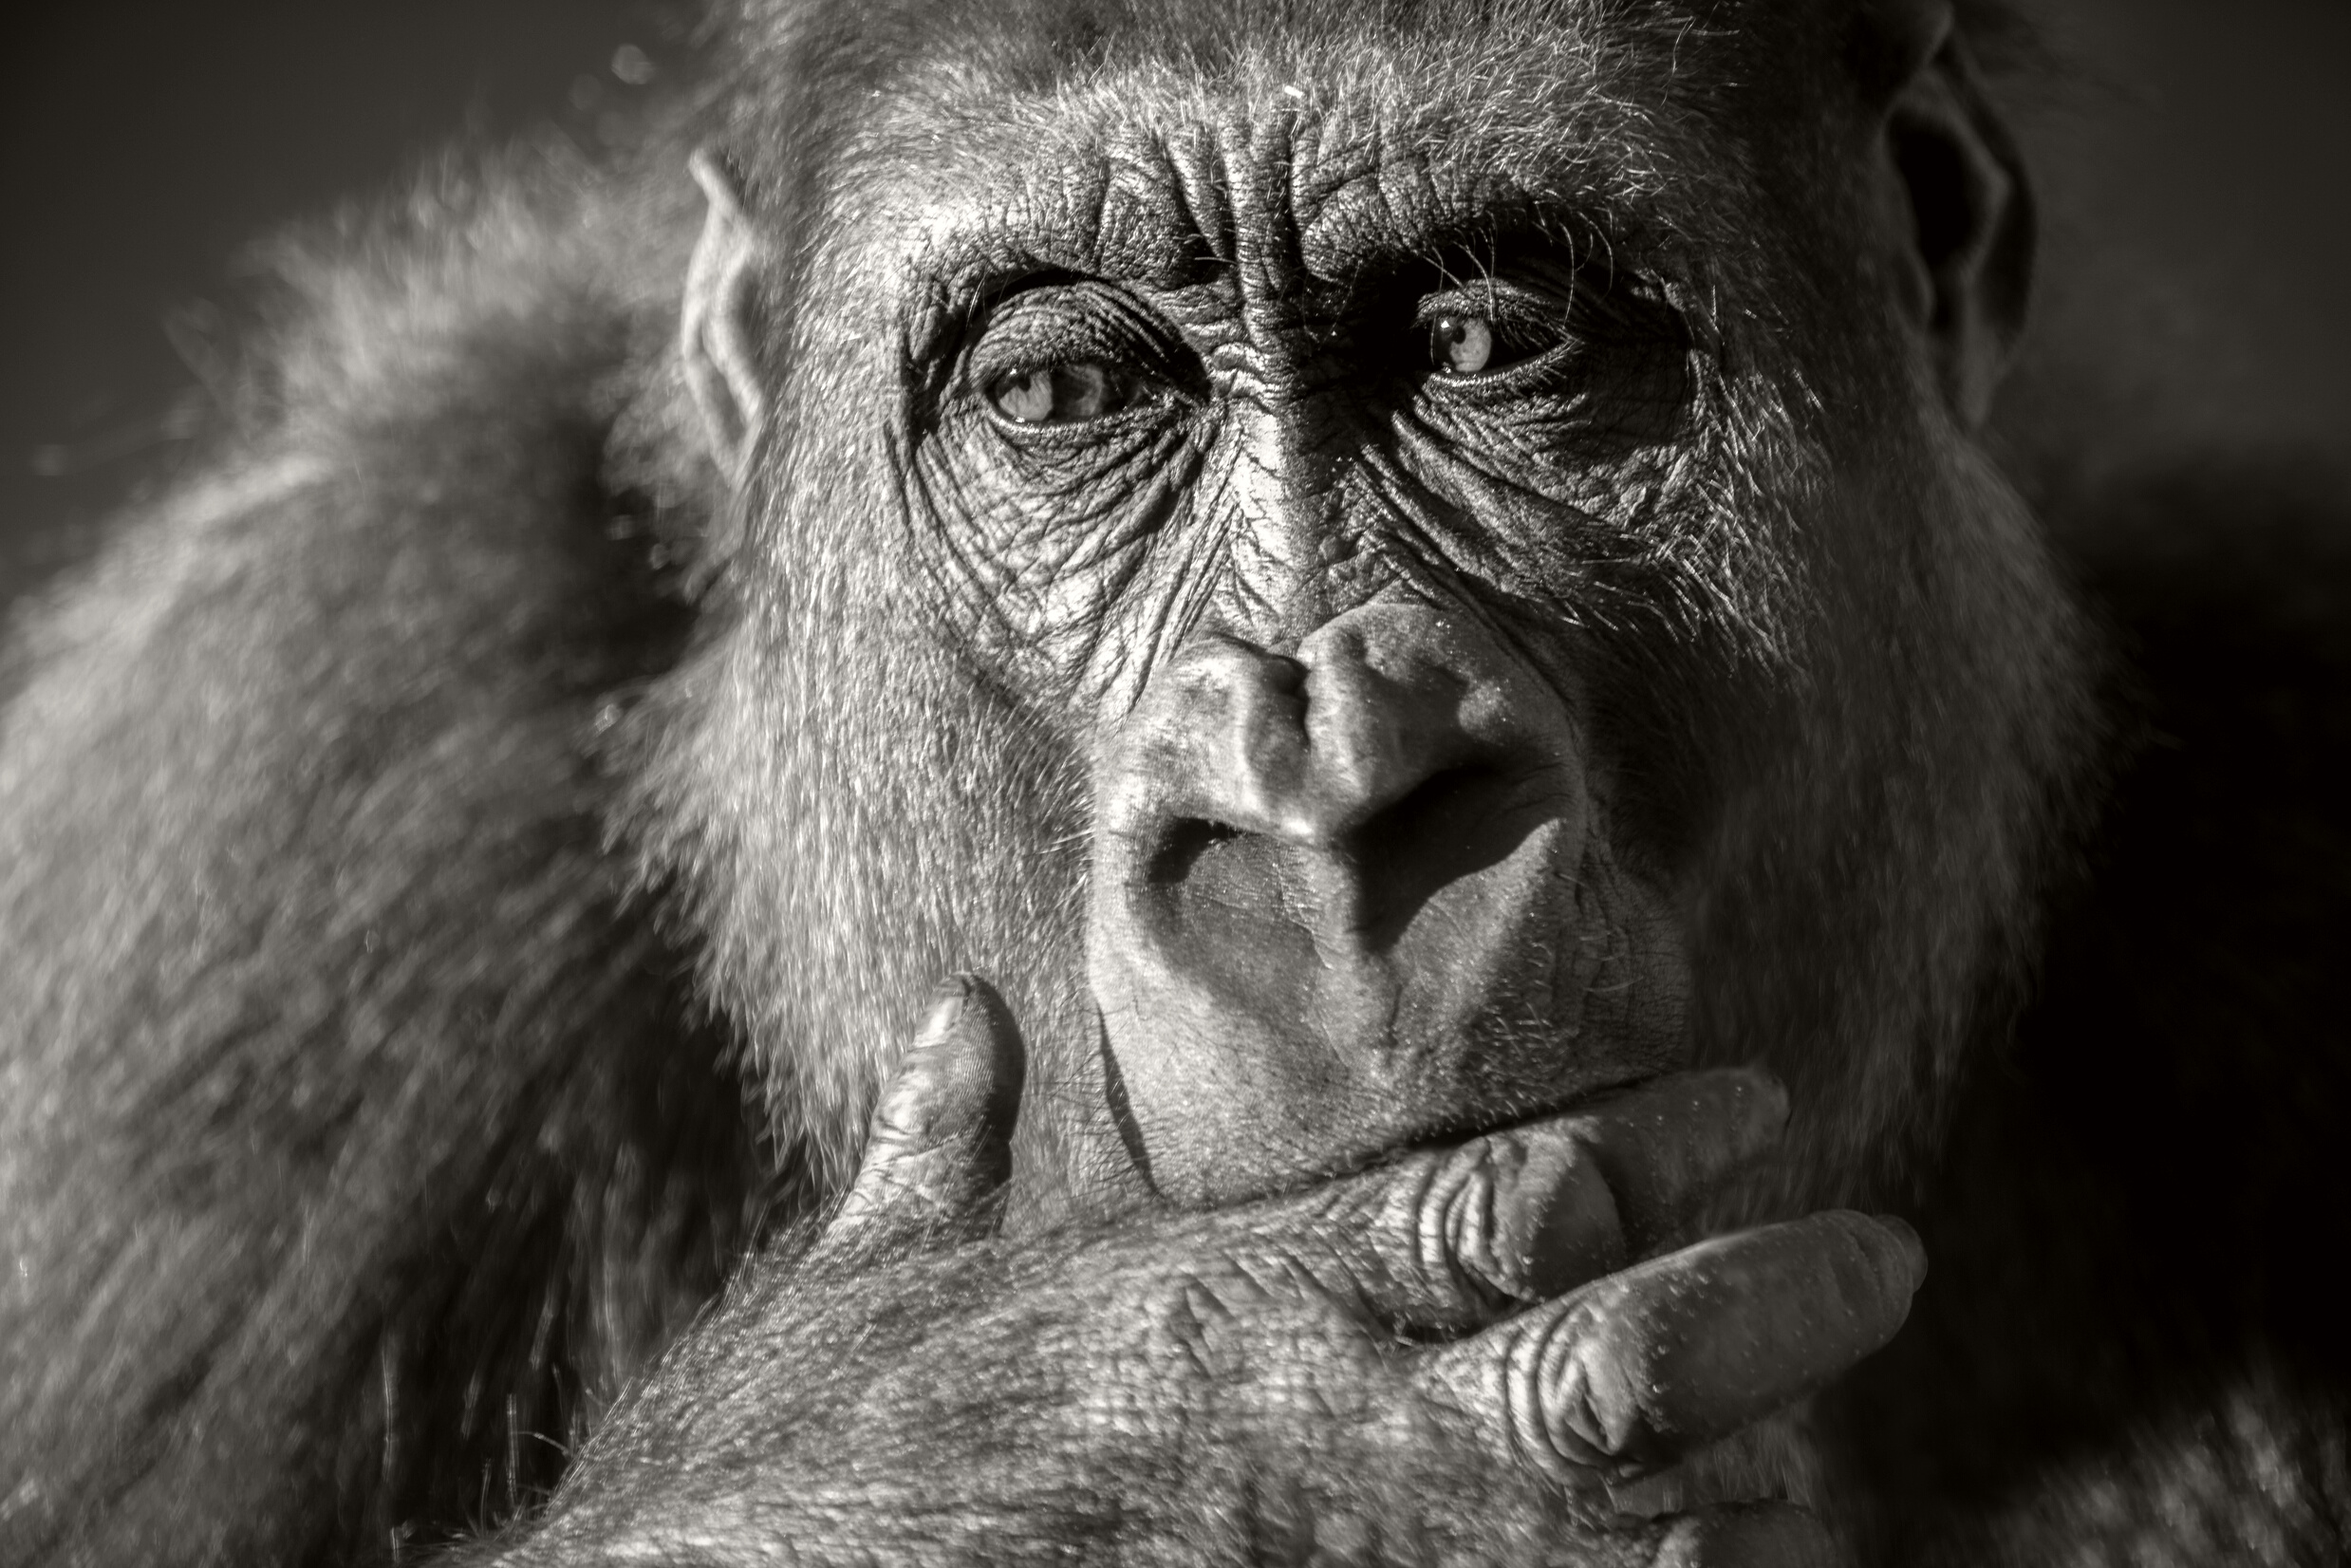 Gorilla female (Gorilla gorilla gorilla) close up portrait.